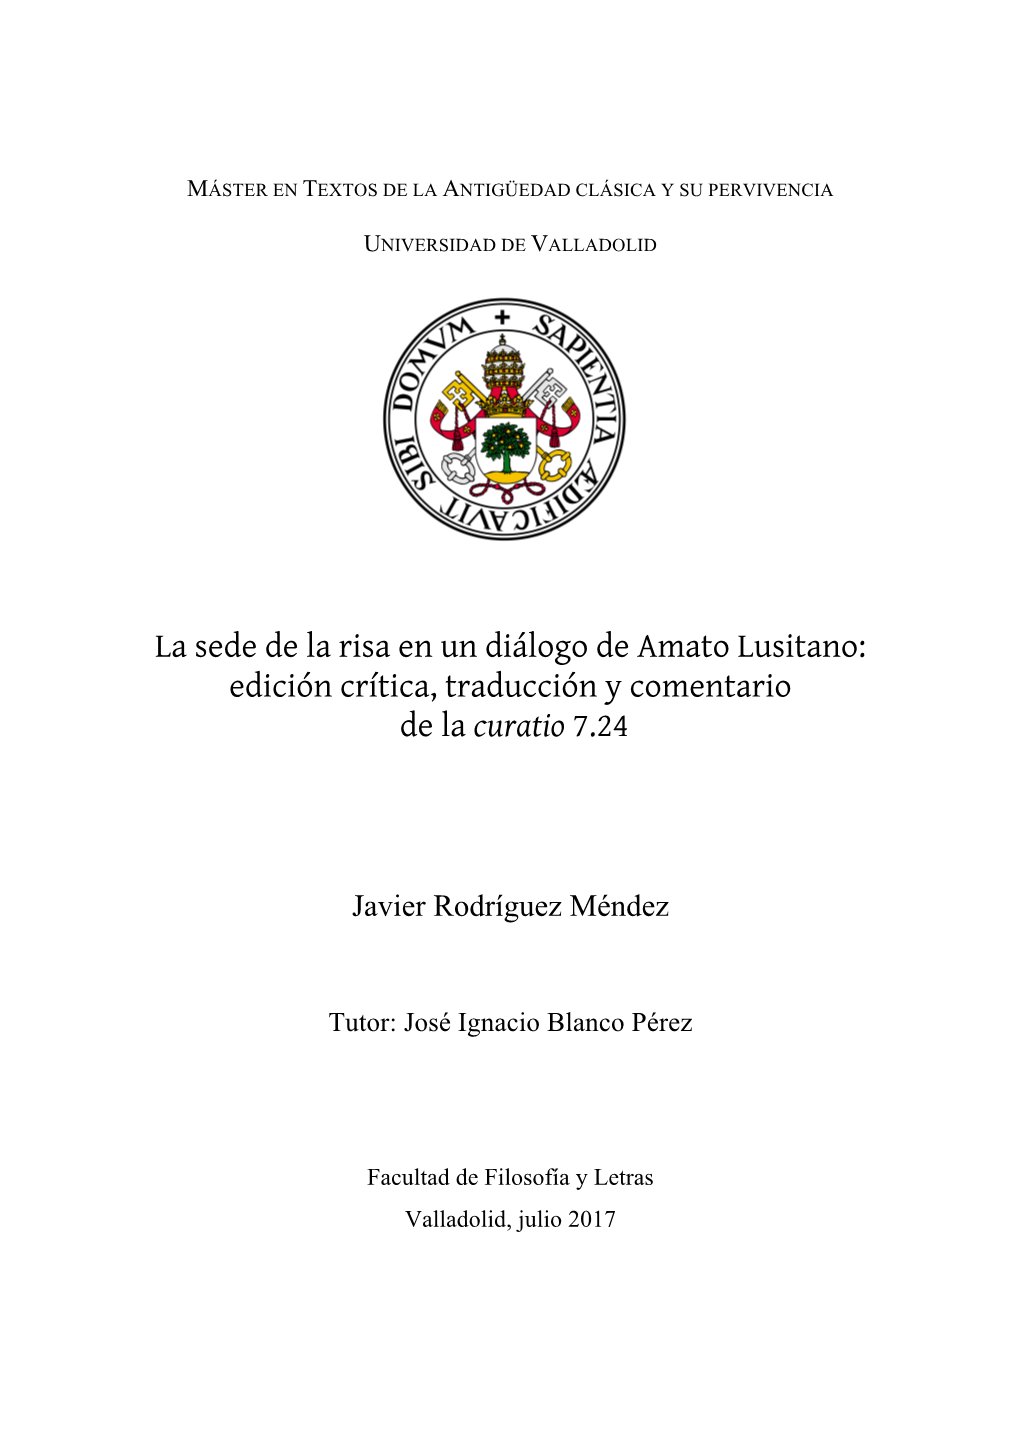 La Sede De La Risa En Un Diálogo De Amato Lusitano: Edición Crítica, Traducción Y Comentario De La Curatio 7.24